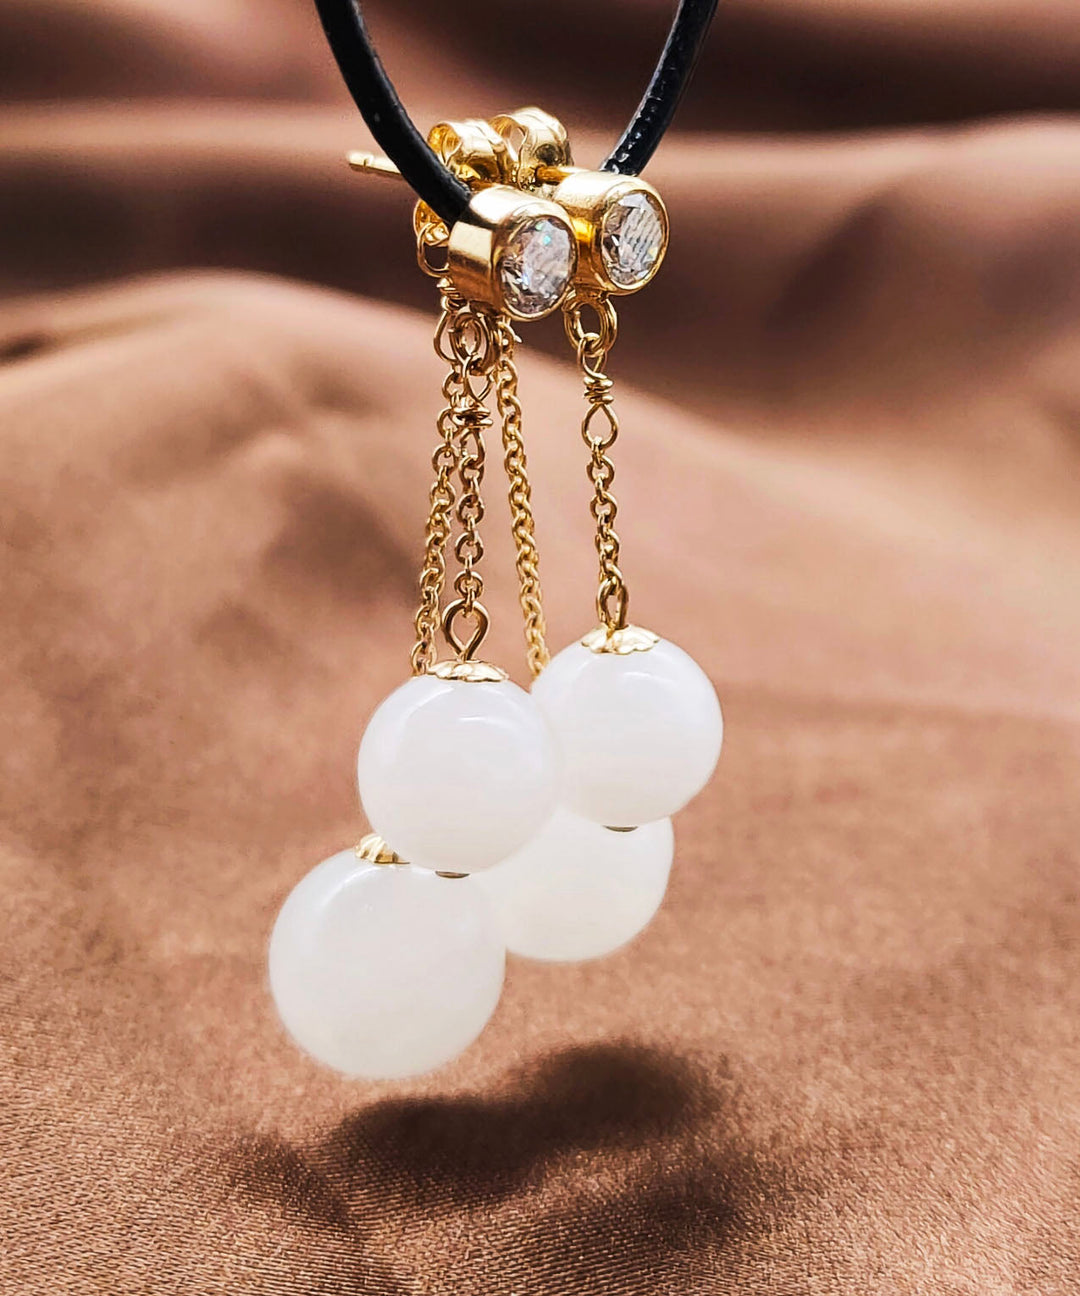 Boutique White 14K Gold Jade Zircon Tassel Drop Earrings